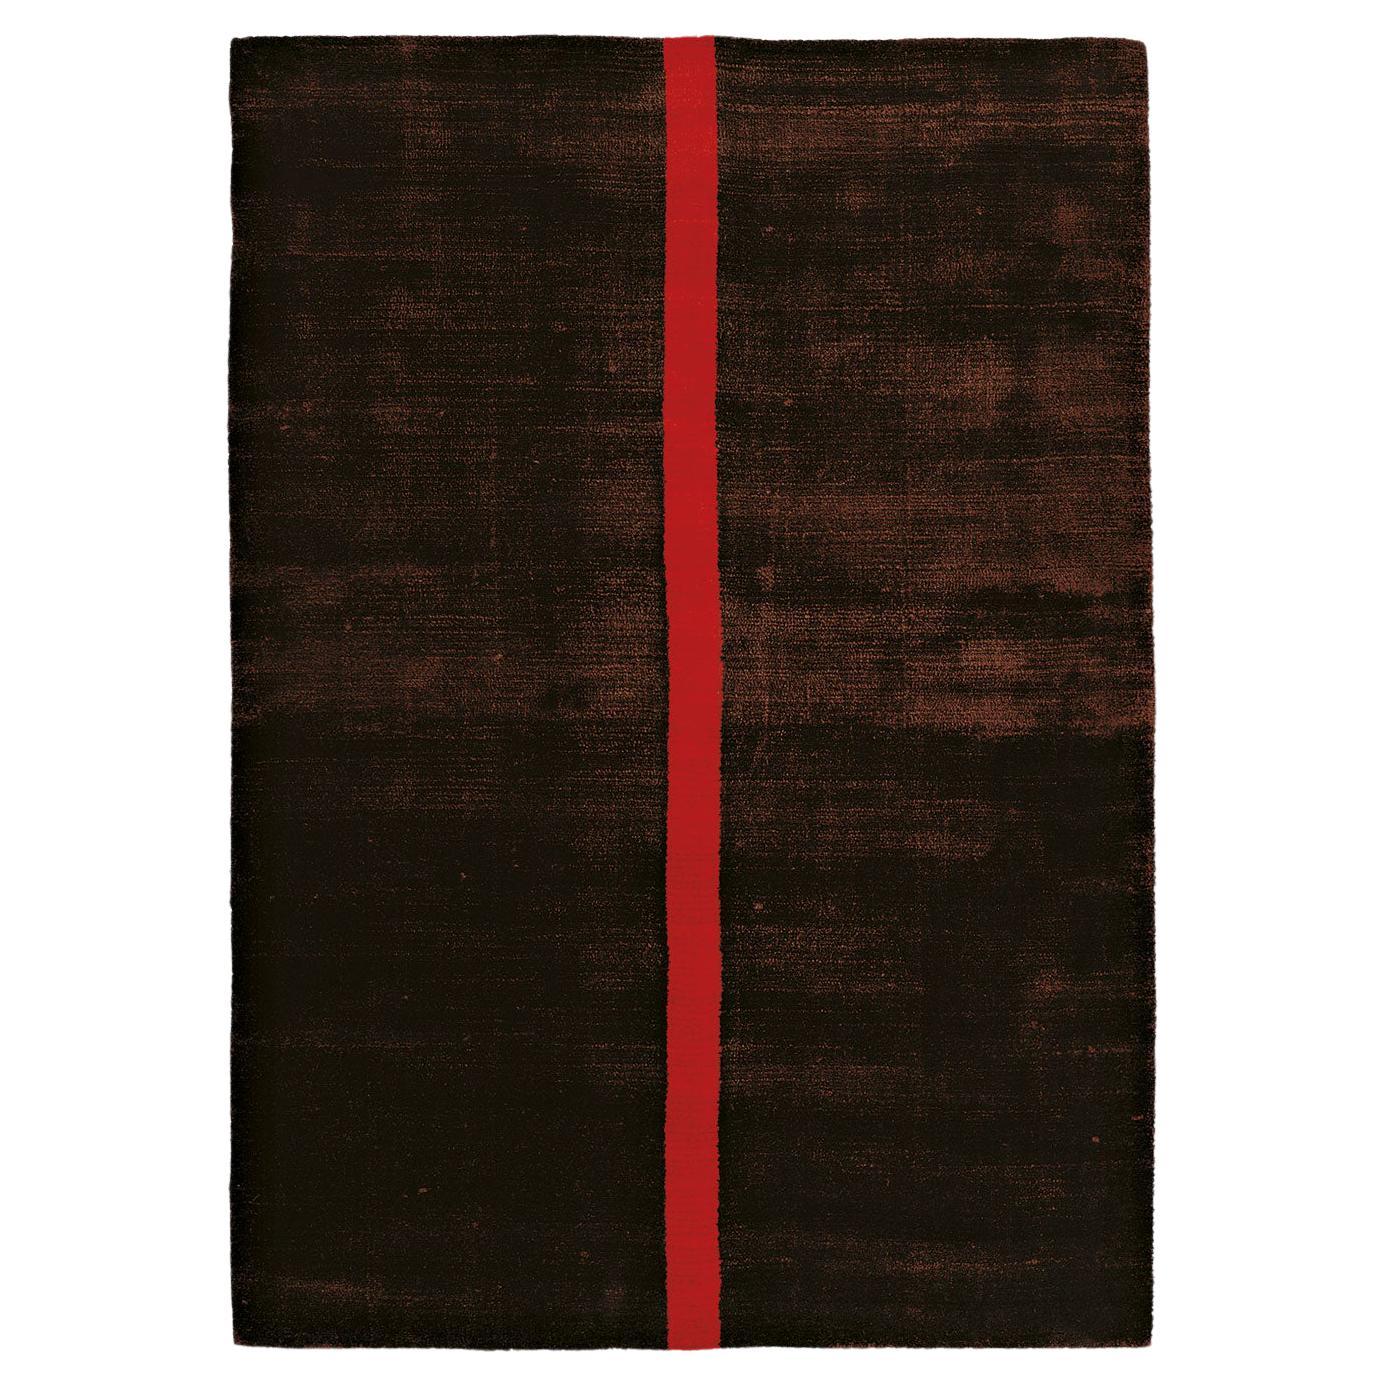 Zeitgenössischer luxuriöser glänzender braun-roter Teppich von Deanna Comellini 170x240 cm